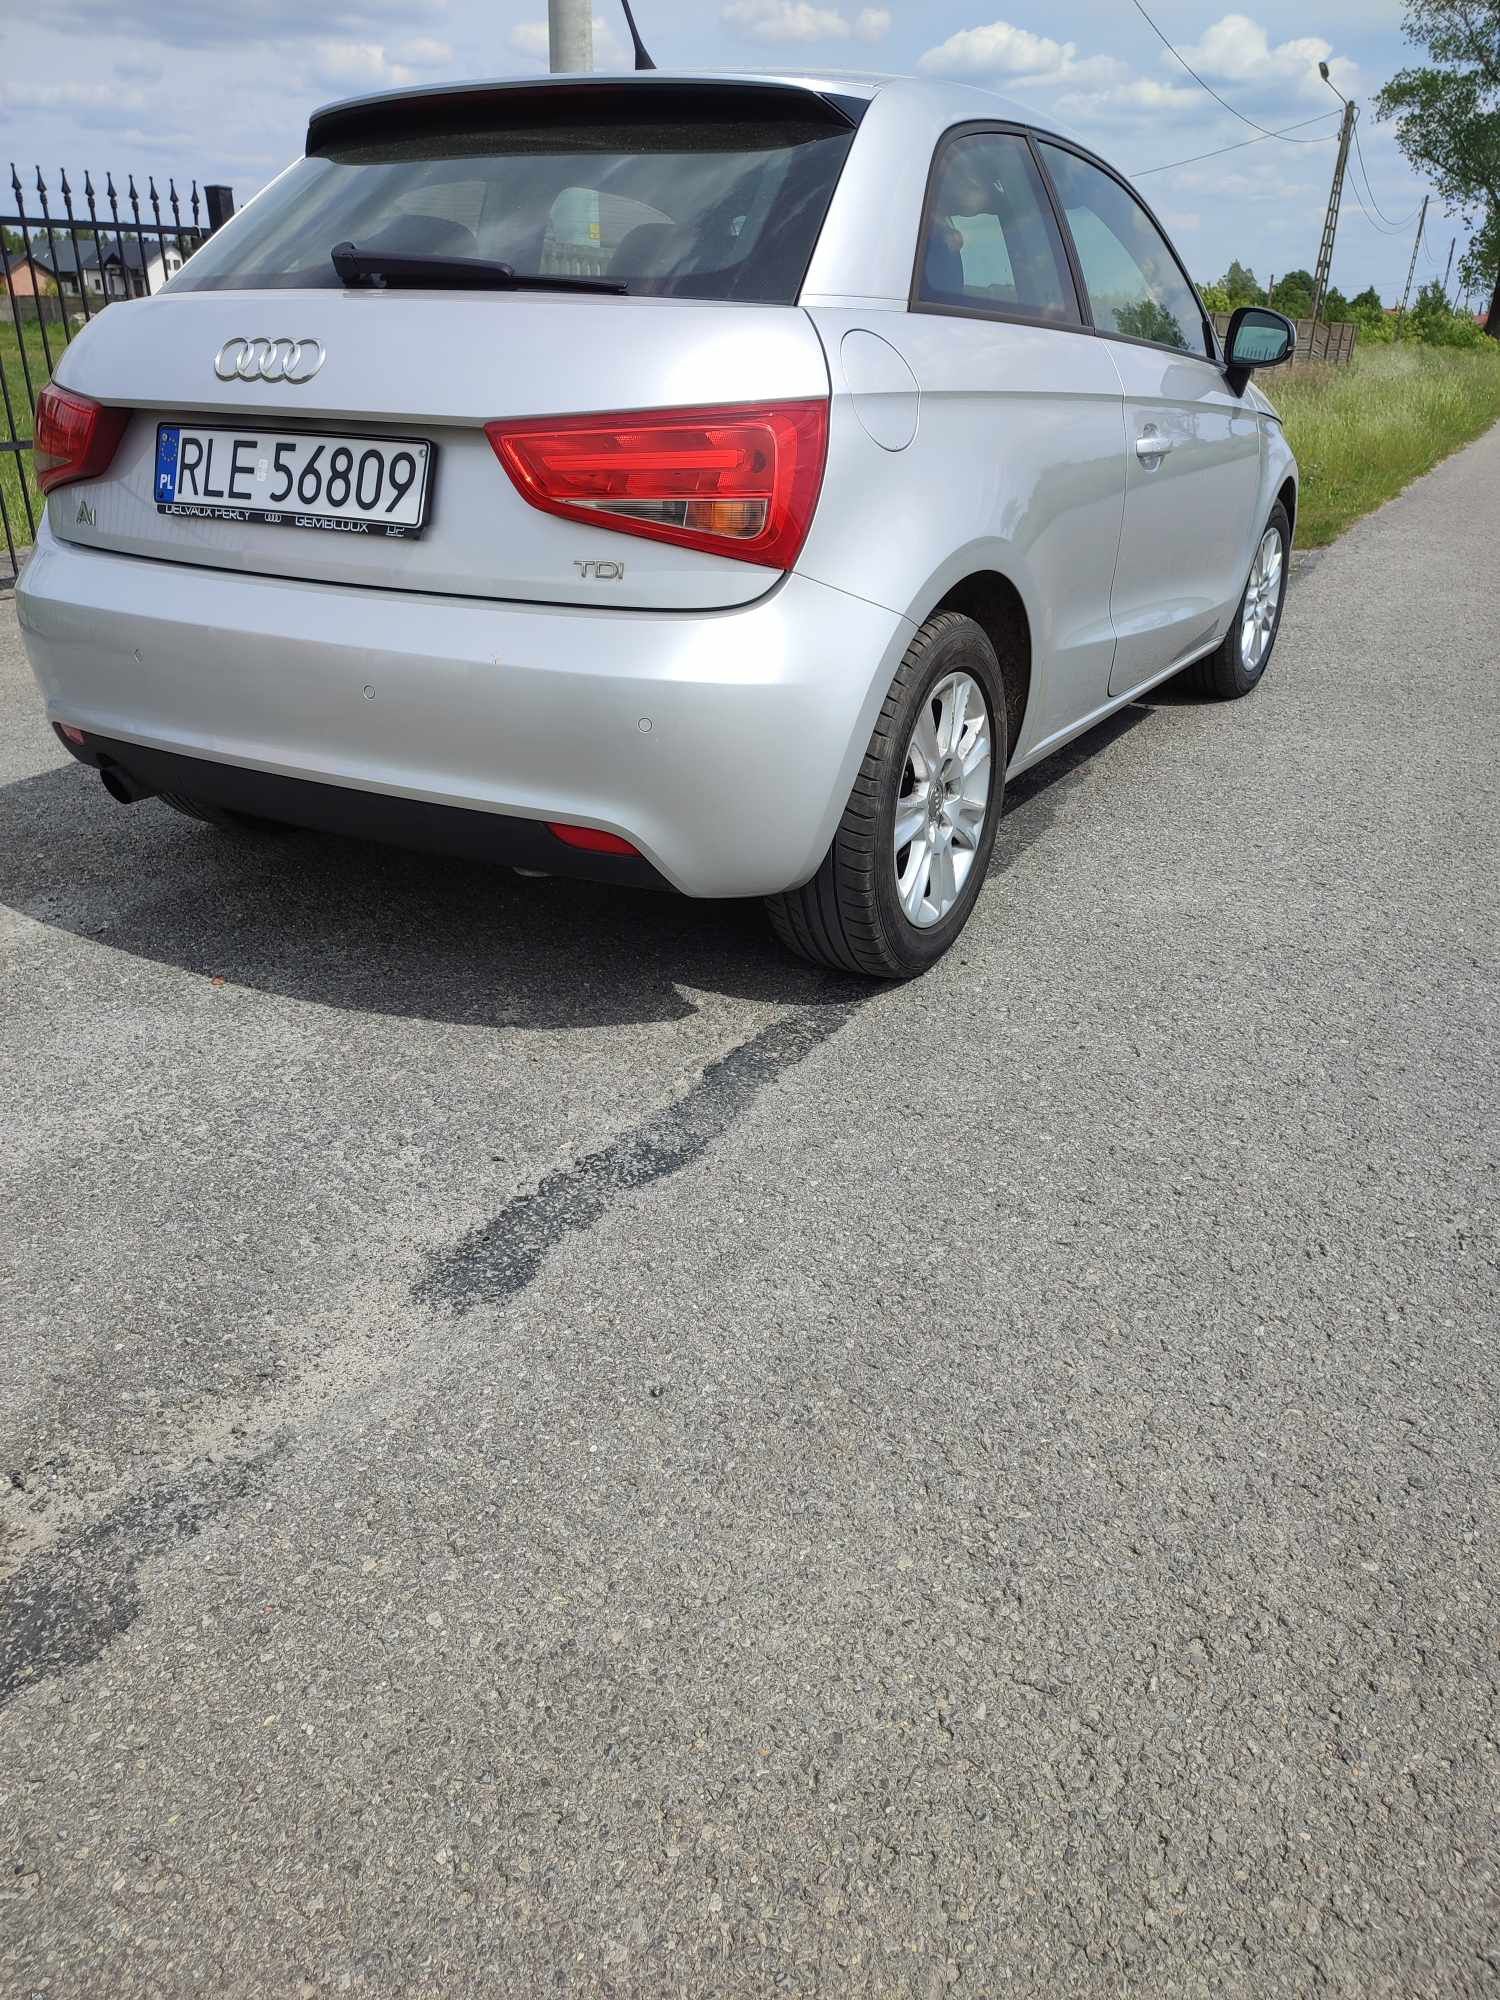 Audi a1 bogate wyposażenie 1.6 TDI 90 km